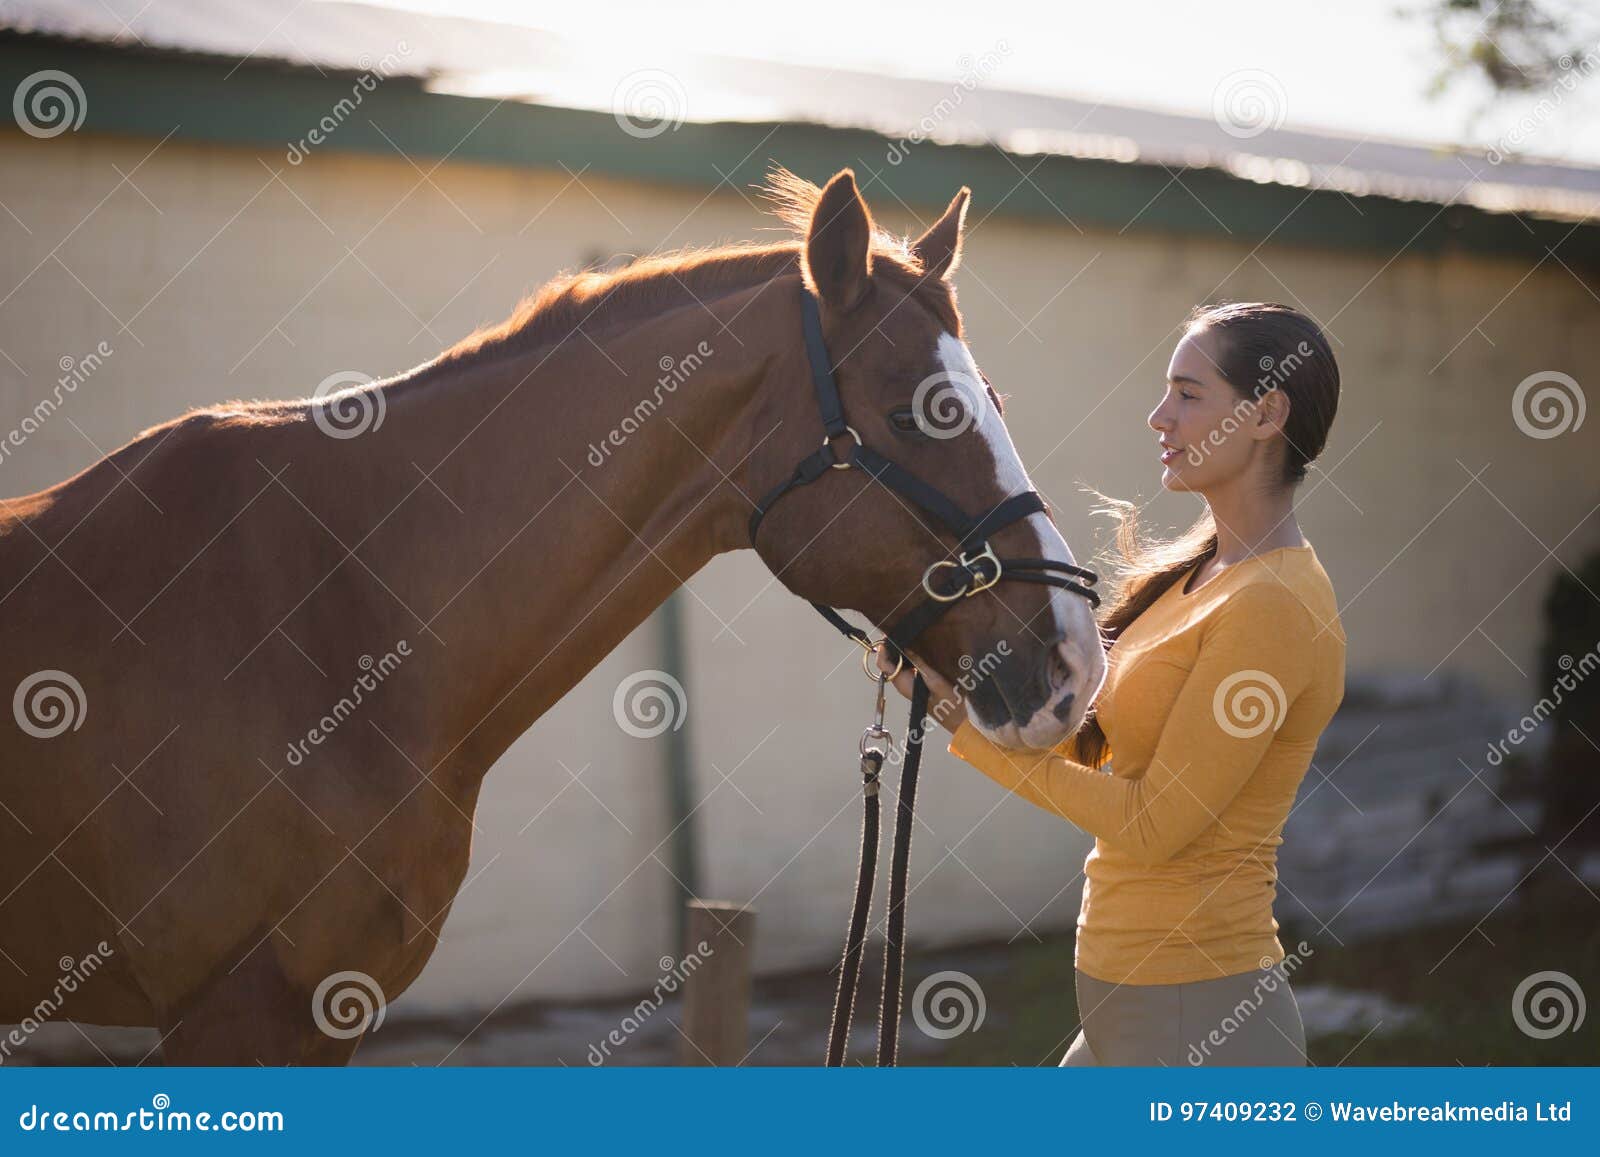 david pulaski add photo mujer teniendo sexo con un caballo